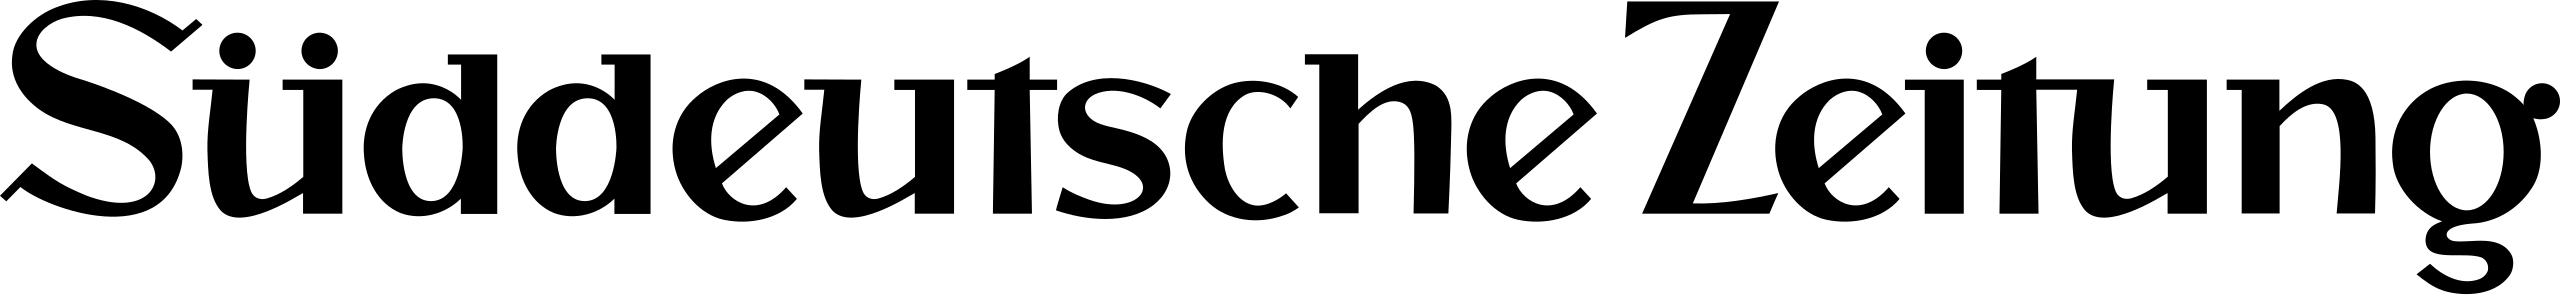 Süddeutsche Zeitung Logo 